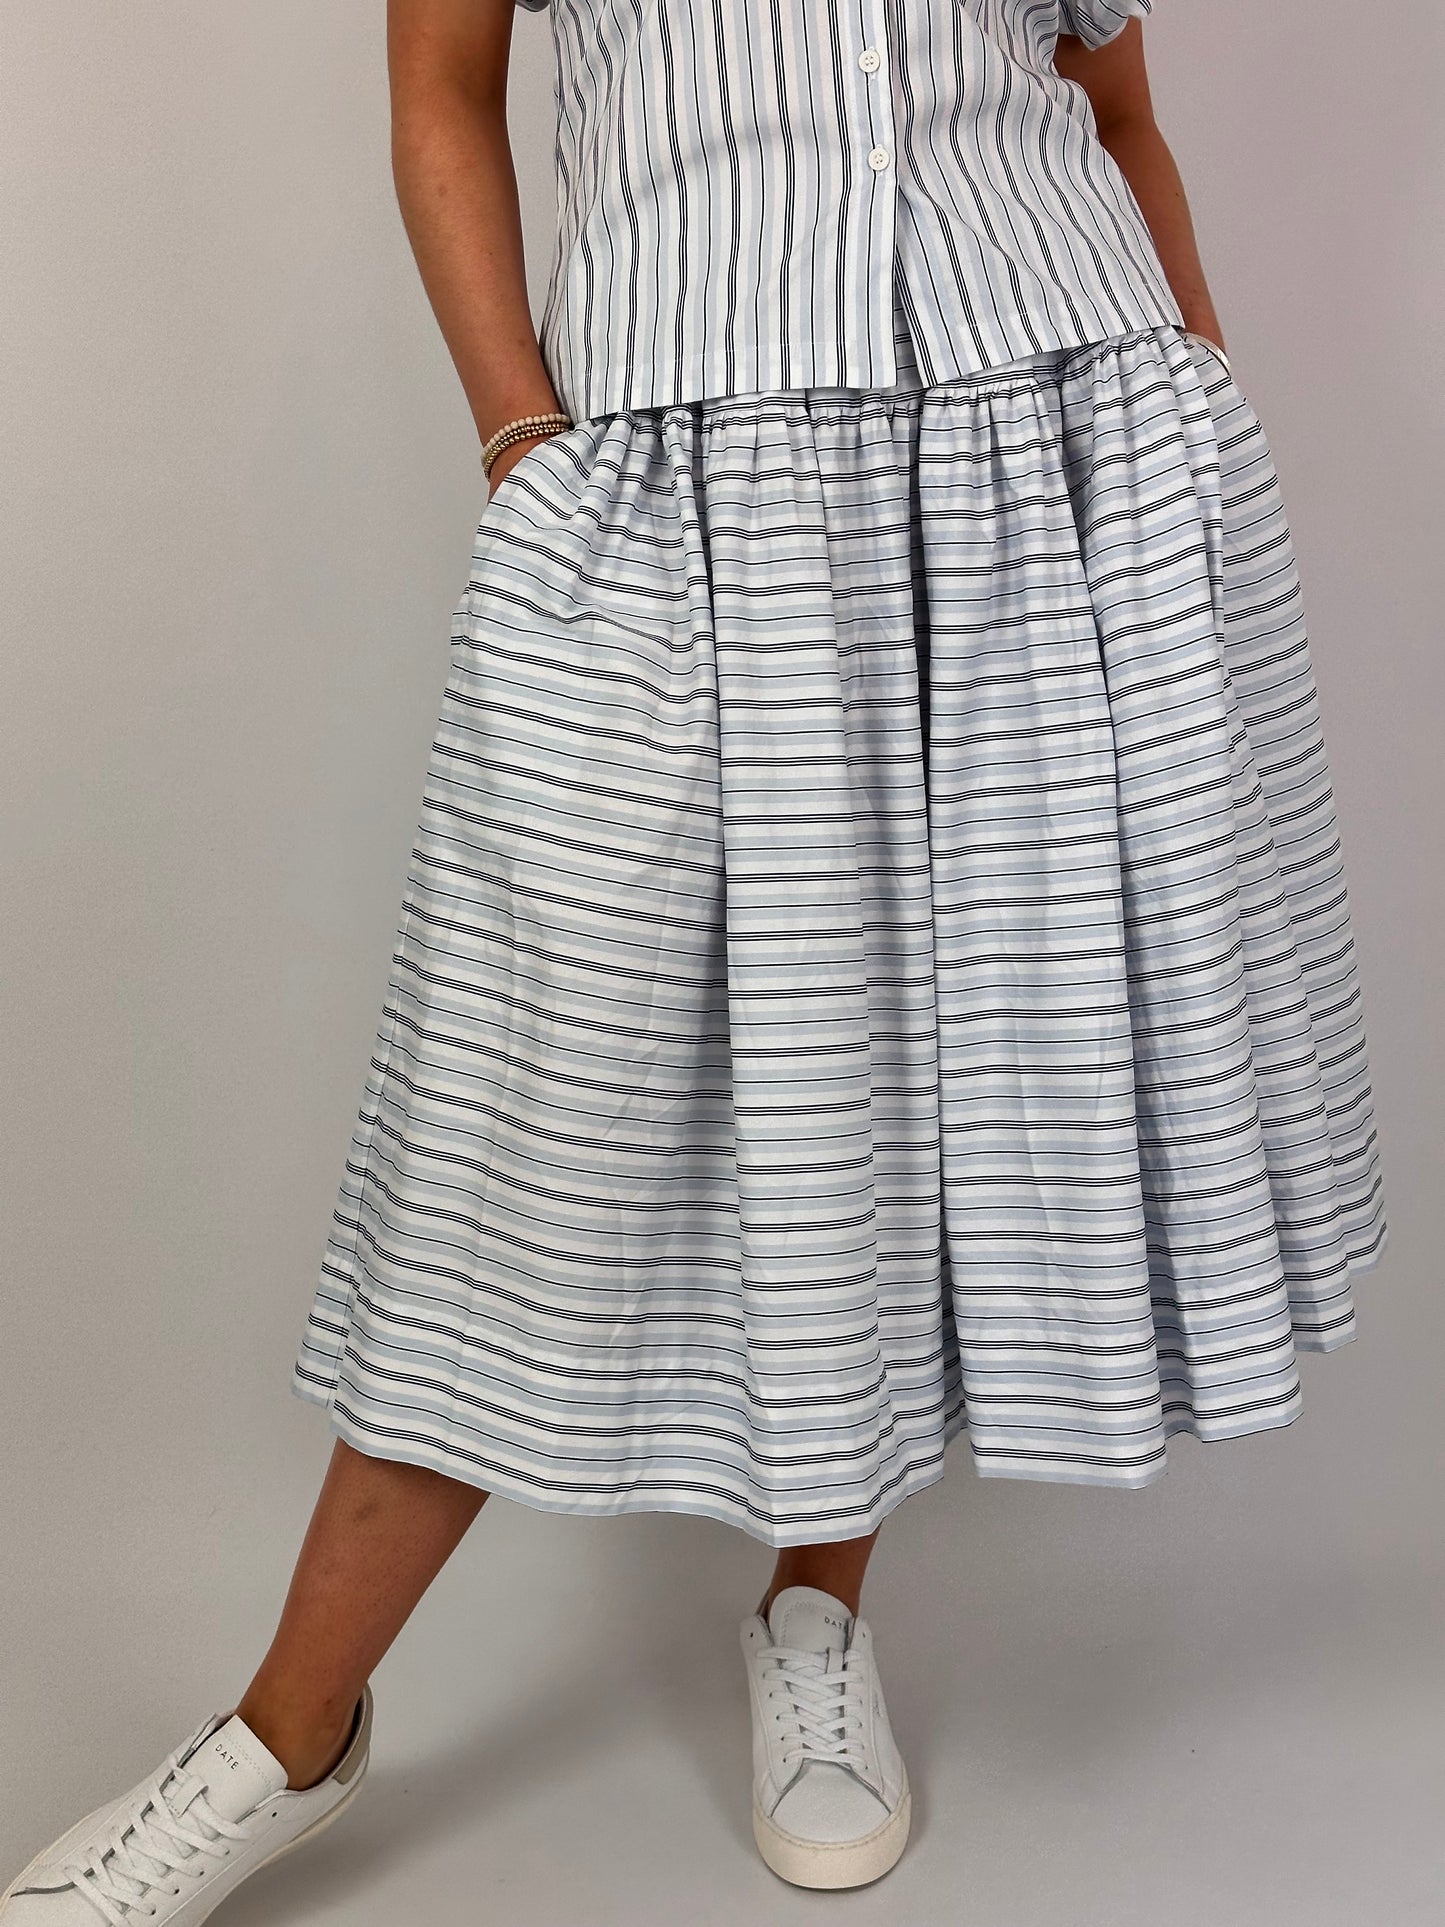 LFDA 615 Skirt Stripes